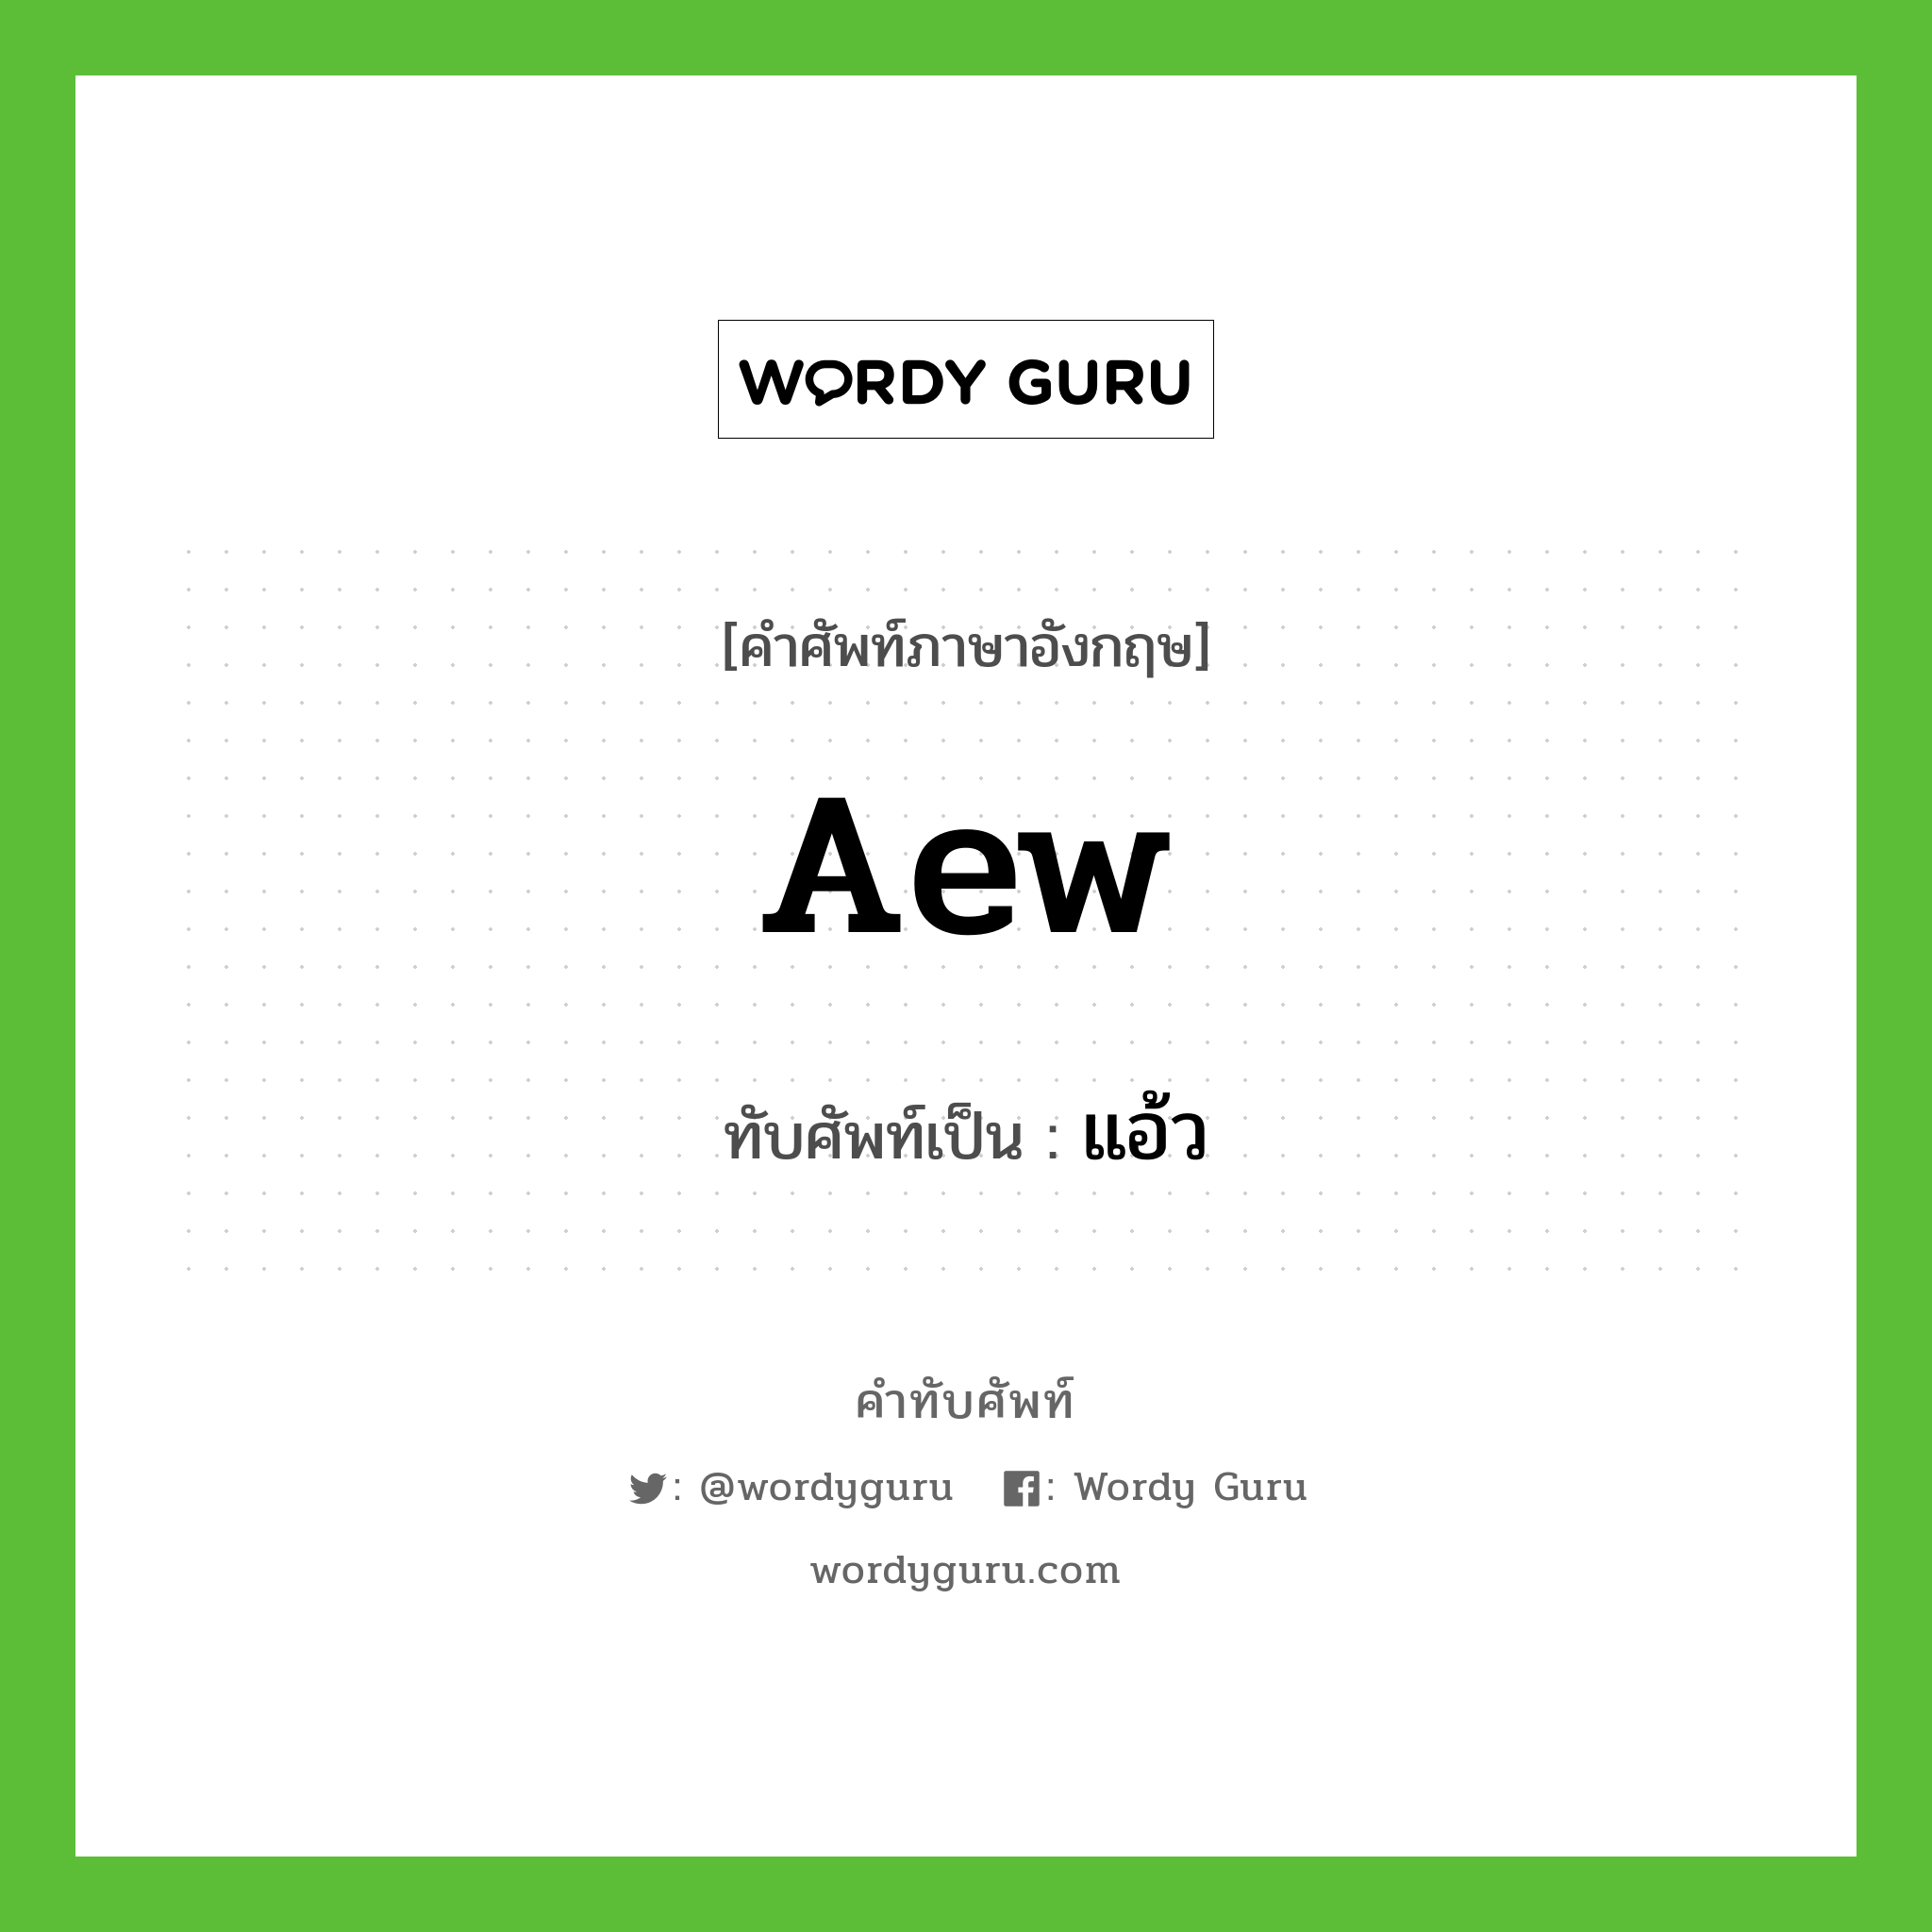 aew เขียนเป็นคำไทยว่าอะไร?, คำศัพท์ภาษาอังกฤษ aew ทับศัพท์เป็น แอ้ว